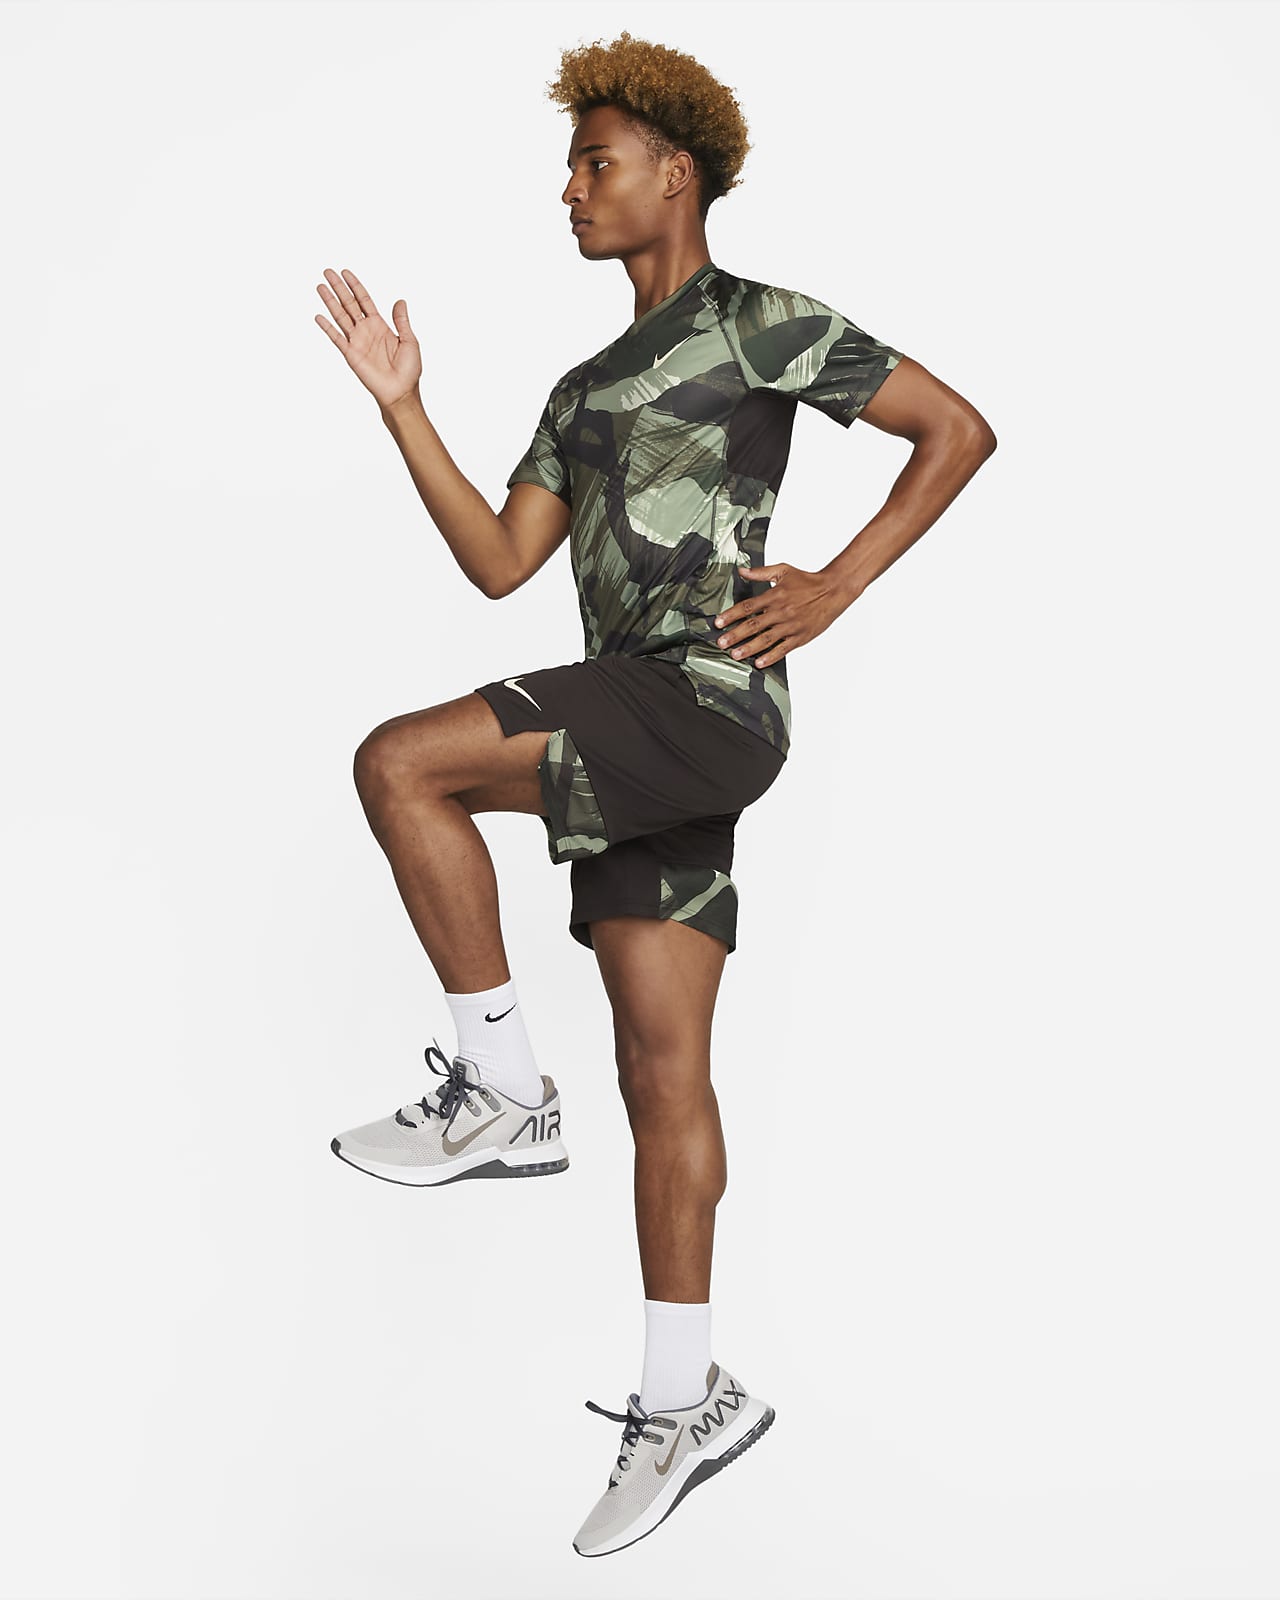 vrijheid Verpersoonlijking Terug, terug, terug deel Nike Pro Dri-FIT Men's Short-Sleeve Slim Camo Top. Nike.com